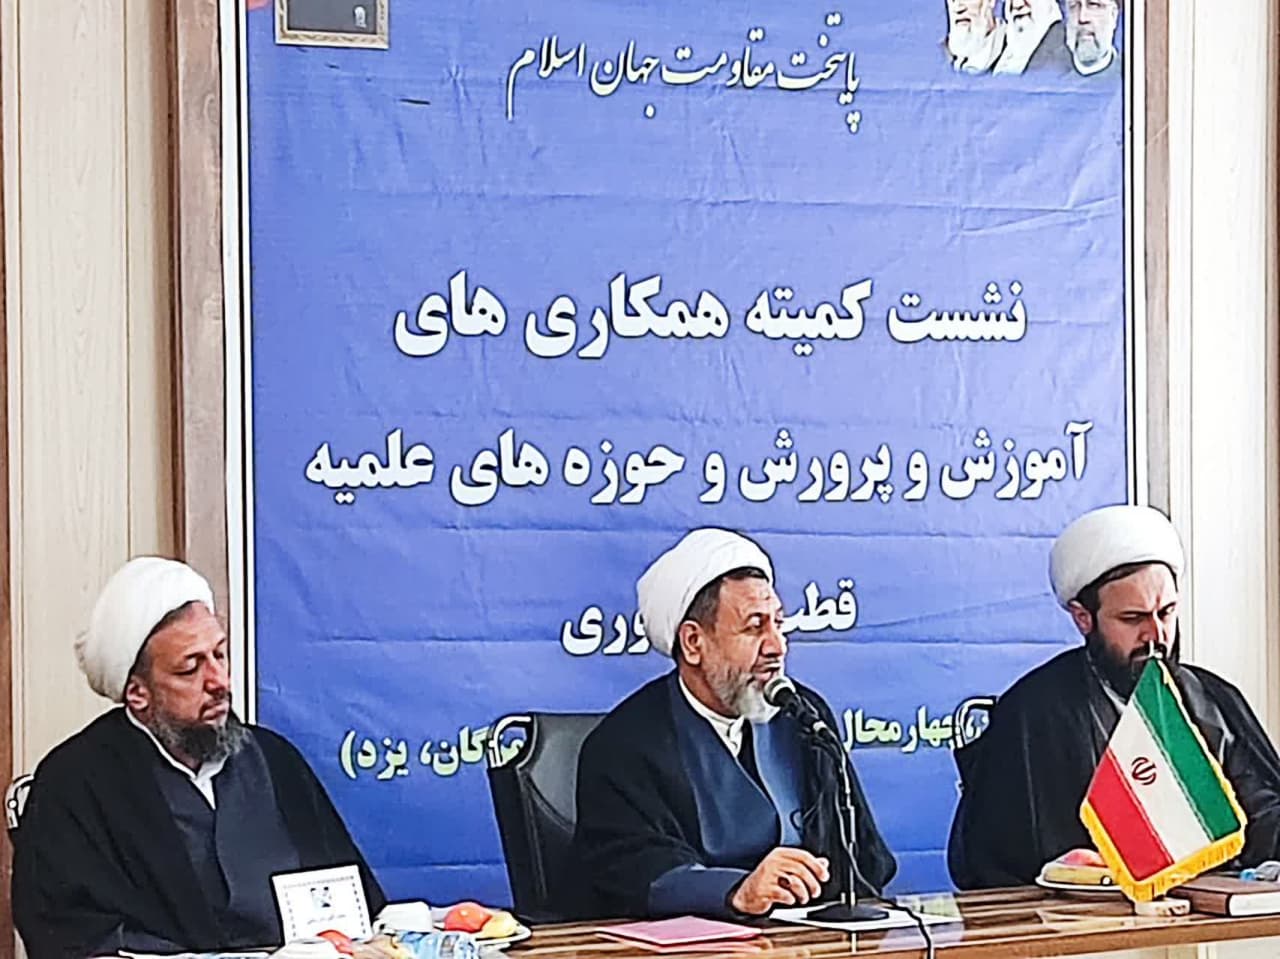 جلسه منطقه ای ستاد های حوزه و دانشگاه در کرمان